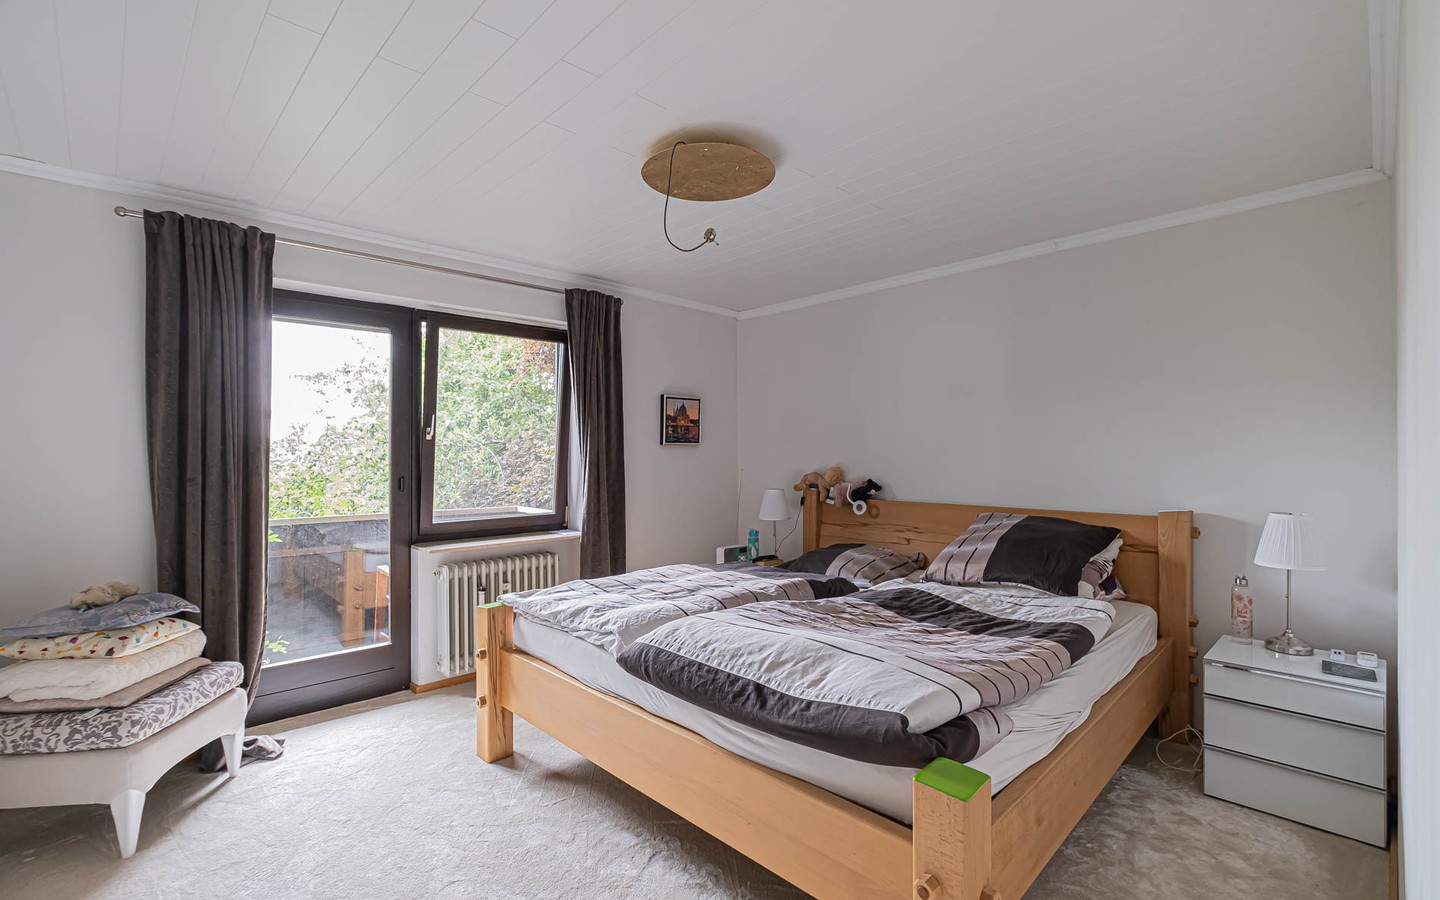 Schlafzimmer - Zeitlich begrenztes Mietangebot: Idyllisches Einfamilienhaus mit Einliegerwohnung und kleinem Garten.